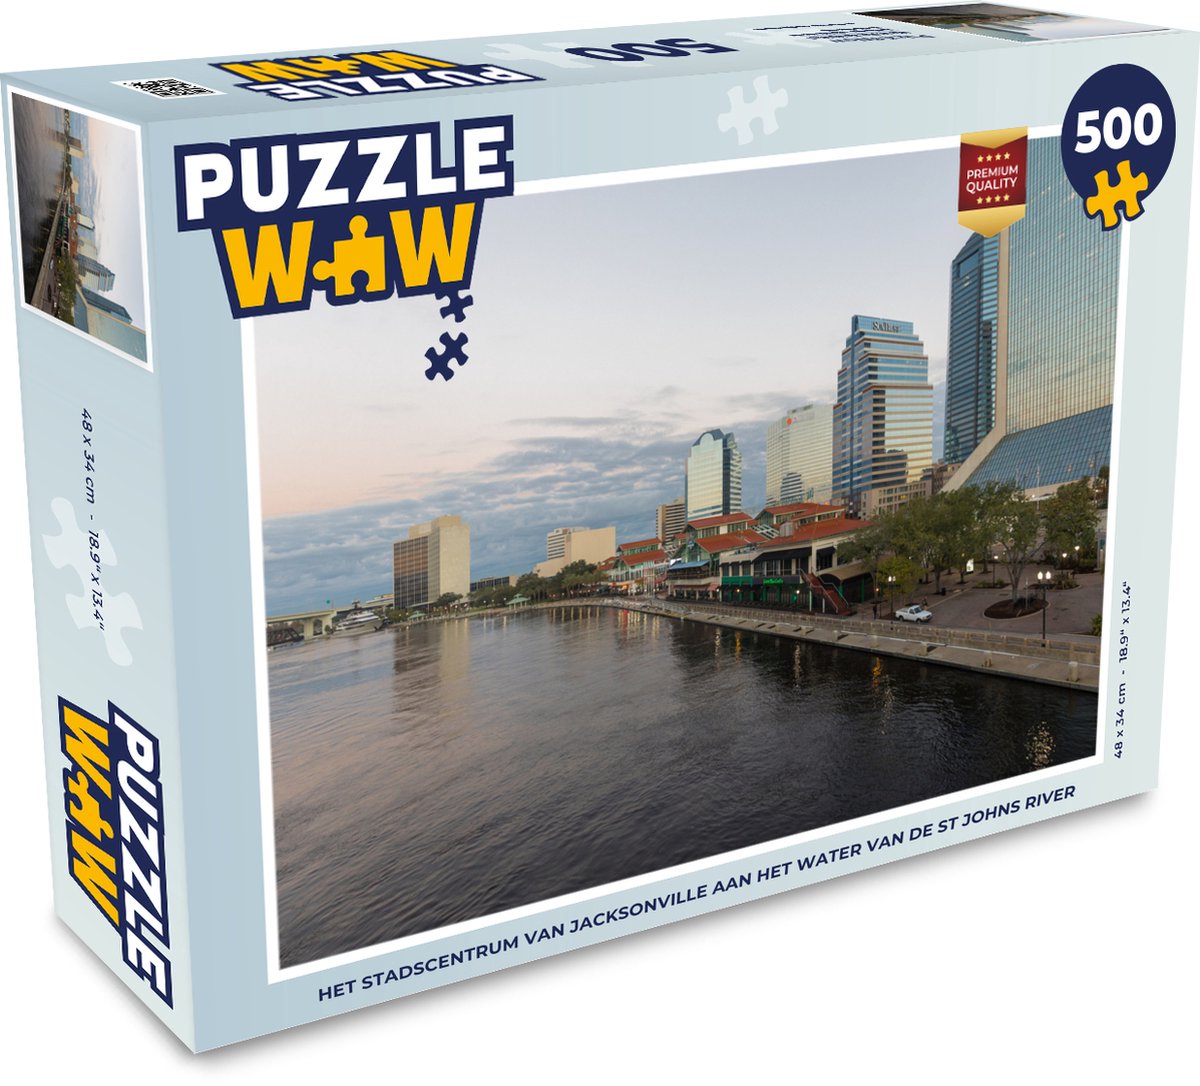 Afbeelding van product Puzzel 500 stukjes Jacksonville - Het stadscentrum van Jacksonville aan het water van de St Johns River - PuzzleWow heeft +100000 puzzels